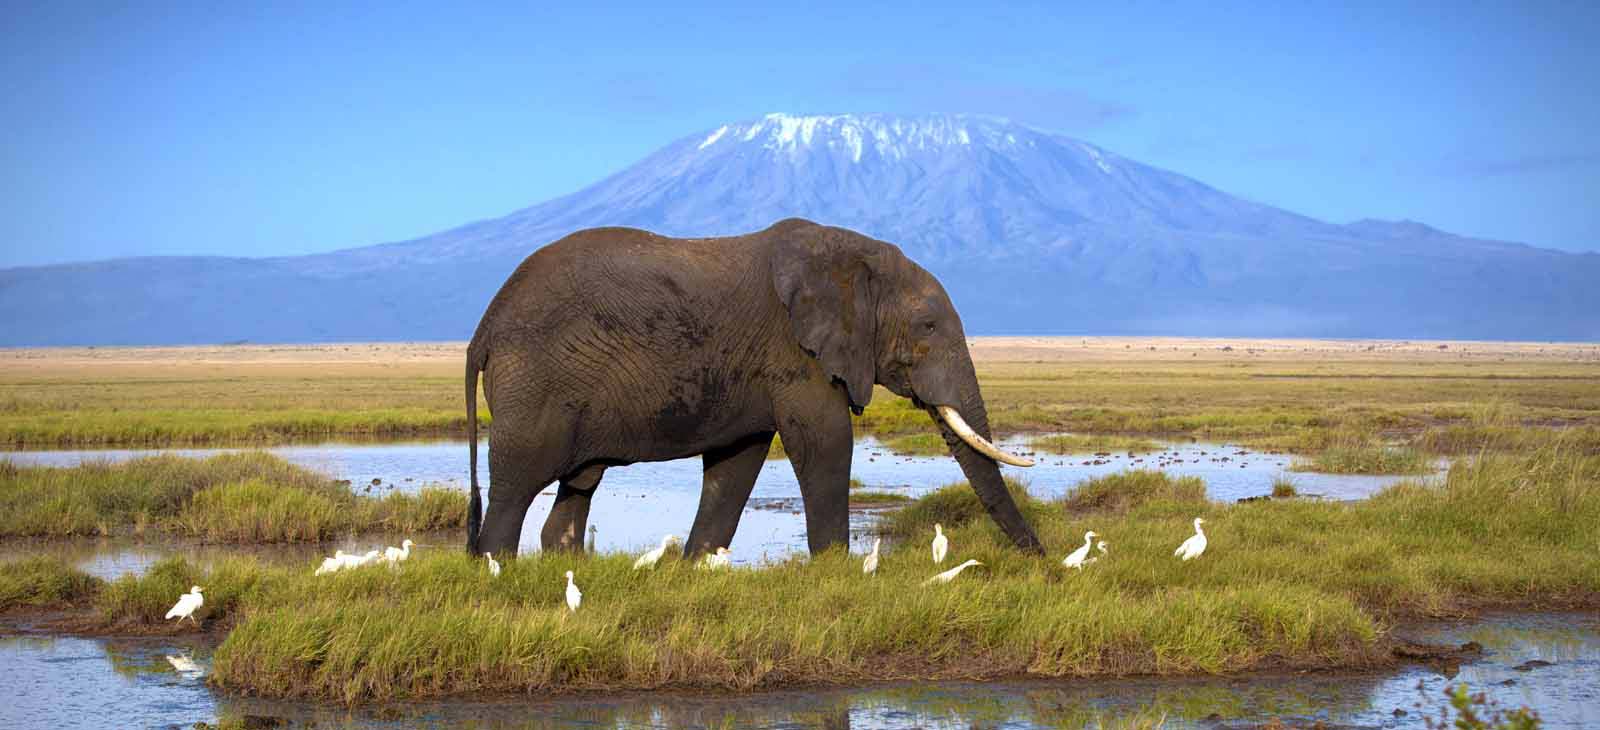 Kenya Safaris: Top 10 Best Picks